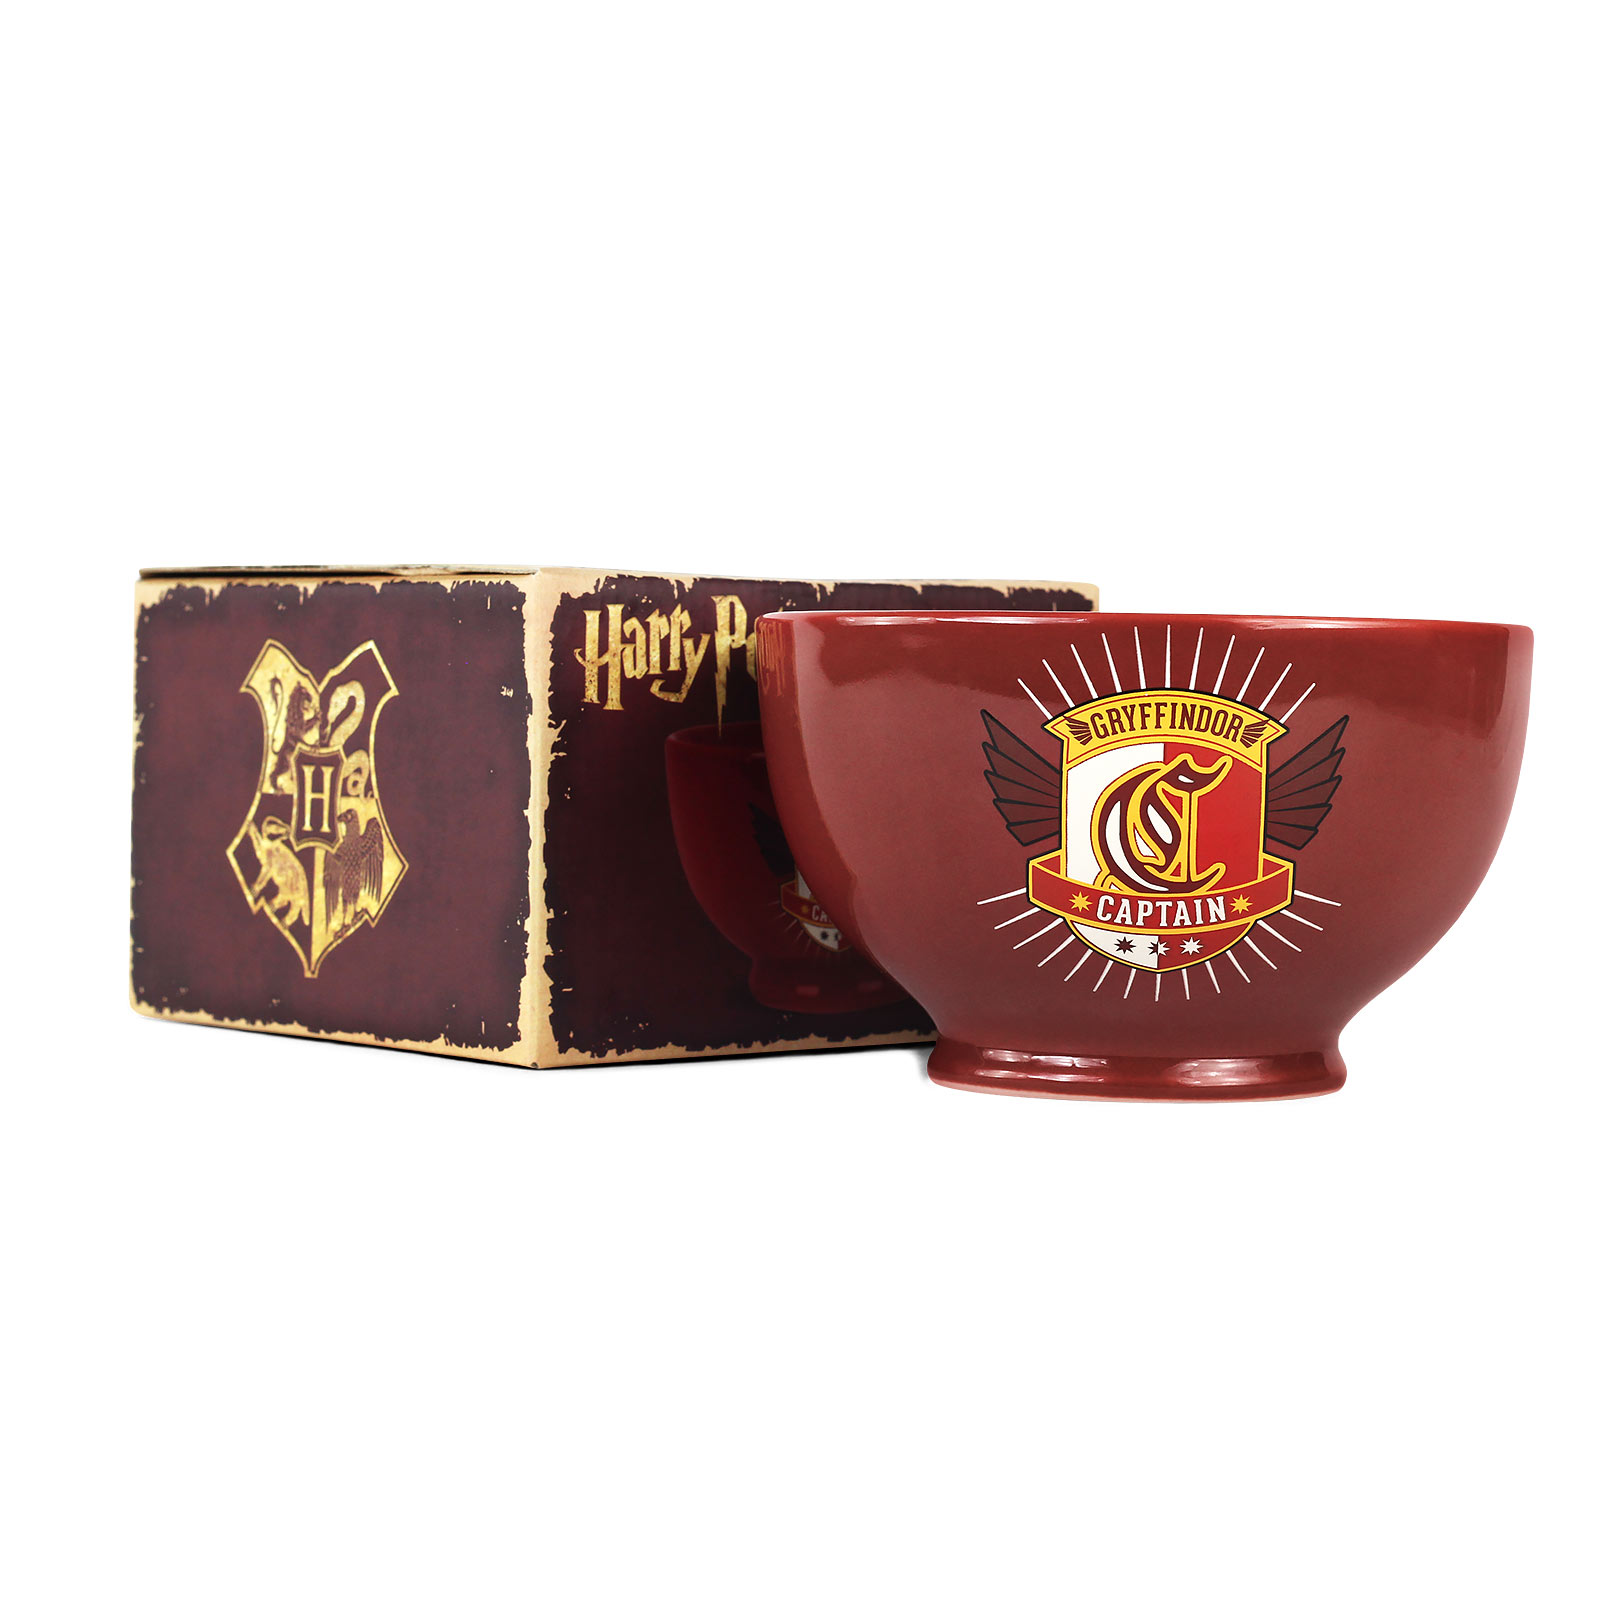 Harry Potter - Gryffindor Cereal Bowl